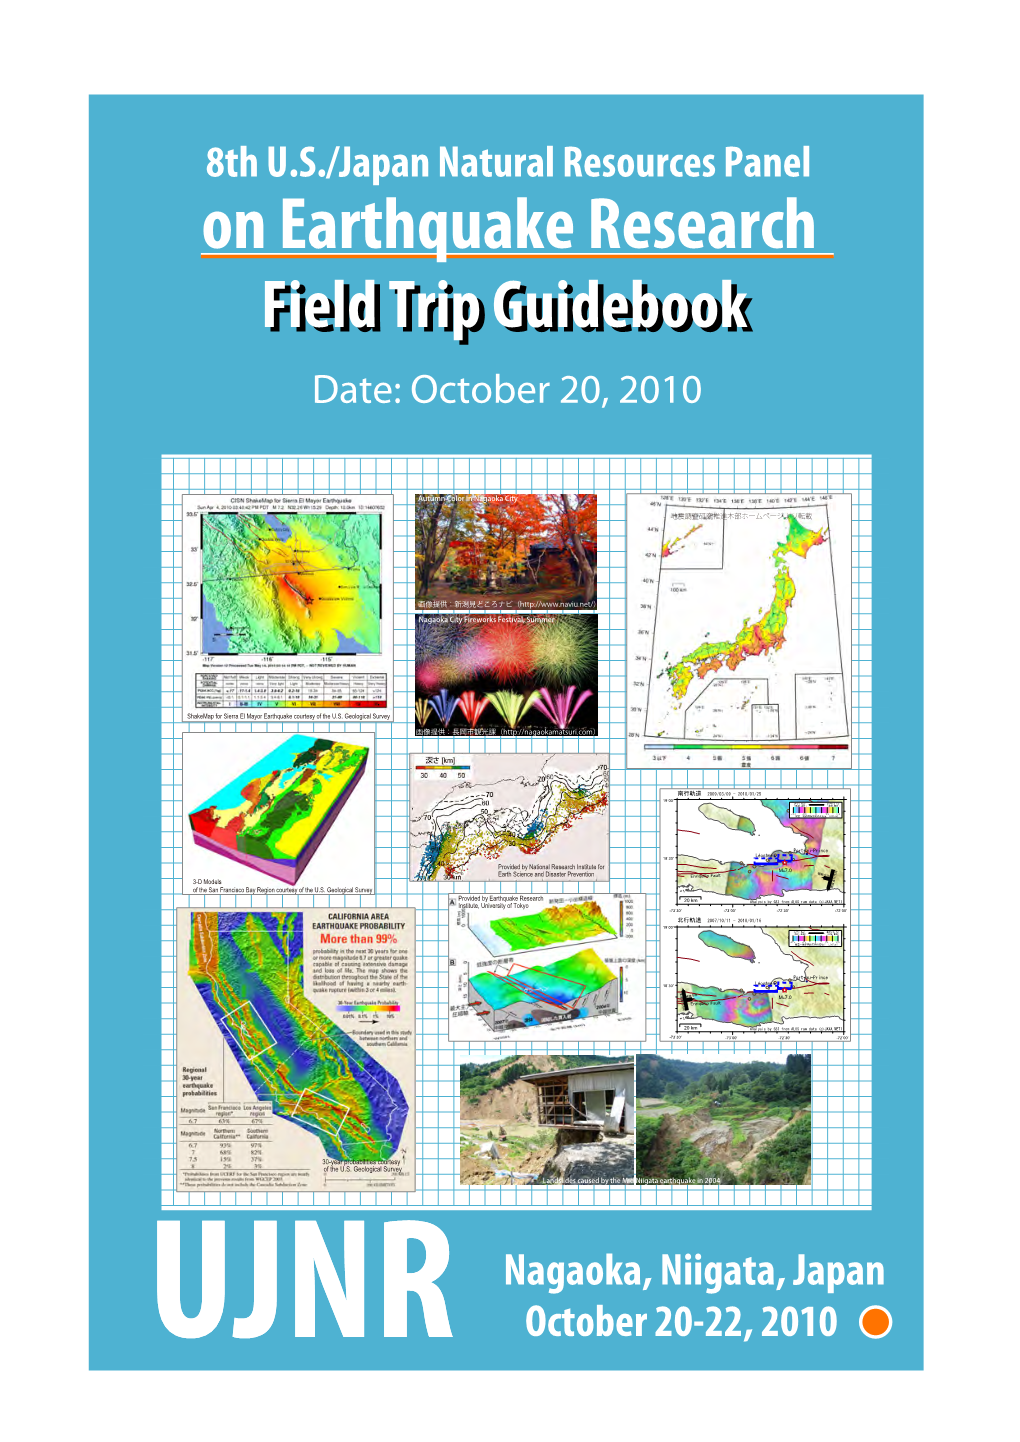 Field Triptrip Guidebookguidebook Date: October 20, 2010